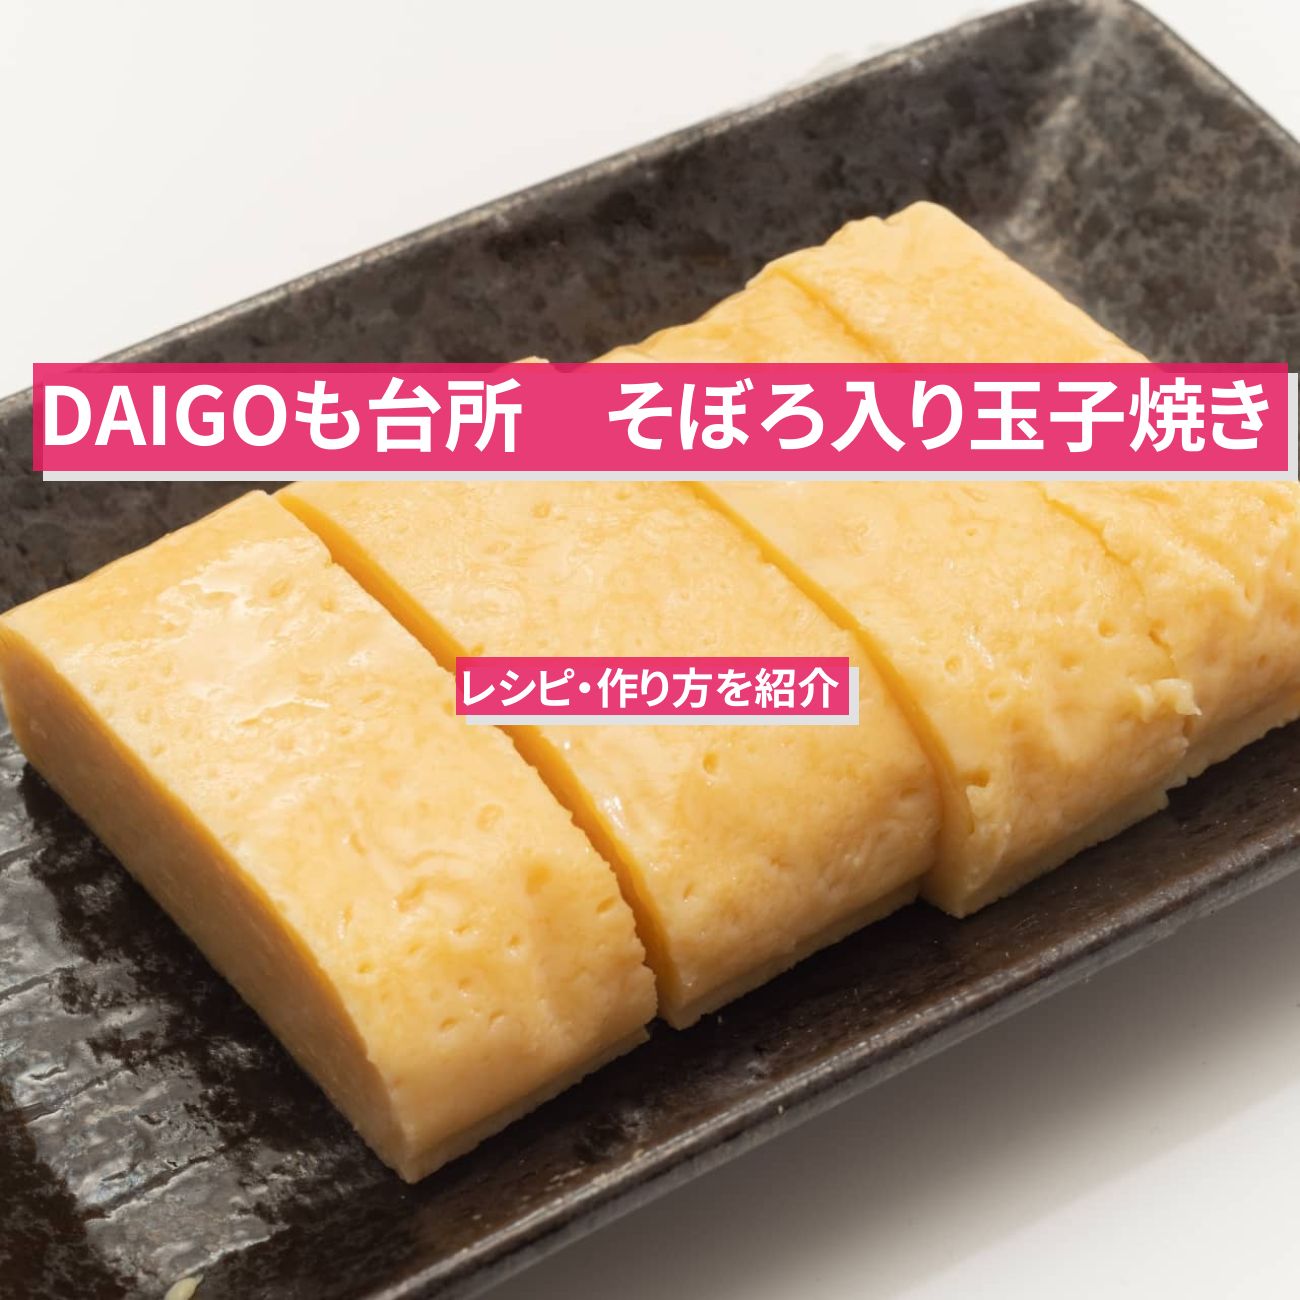 【DAIGOも台所】『そぼろ入り玉子焼き』のレシピ・作り方を紹介〔ダイゴも台所〕